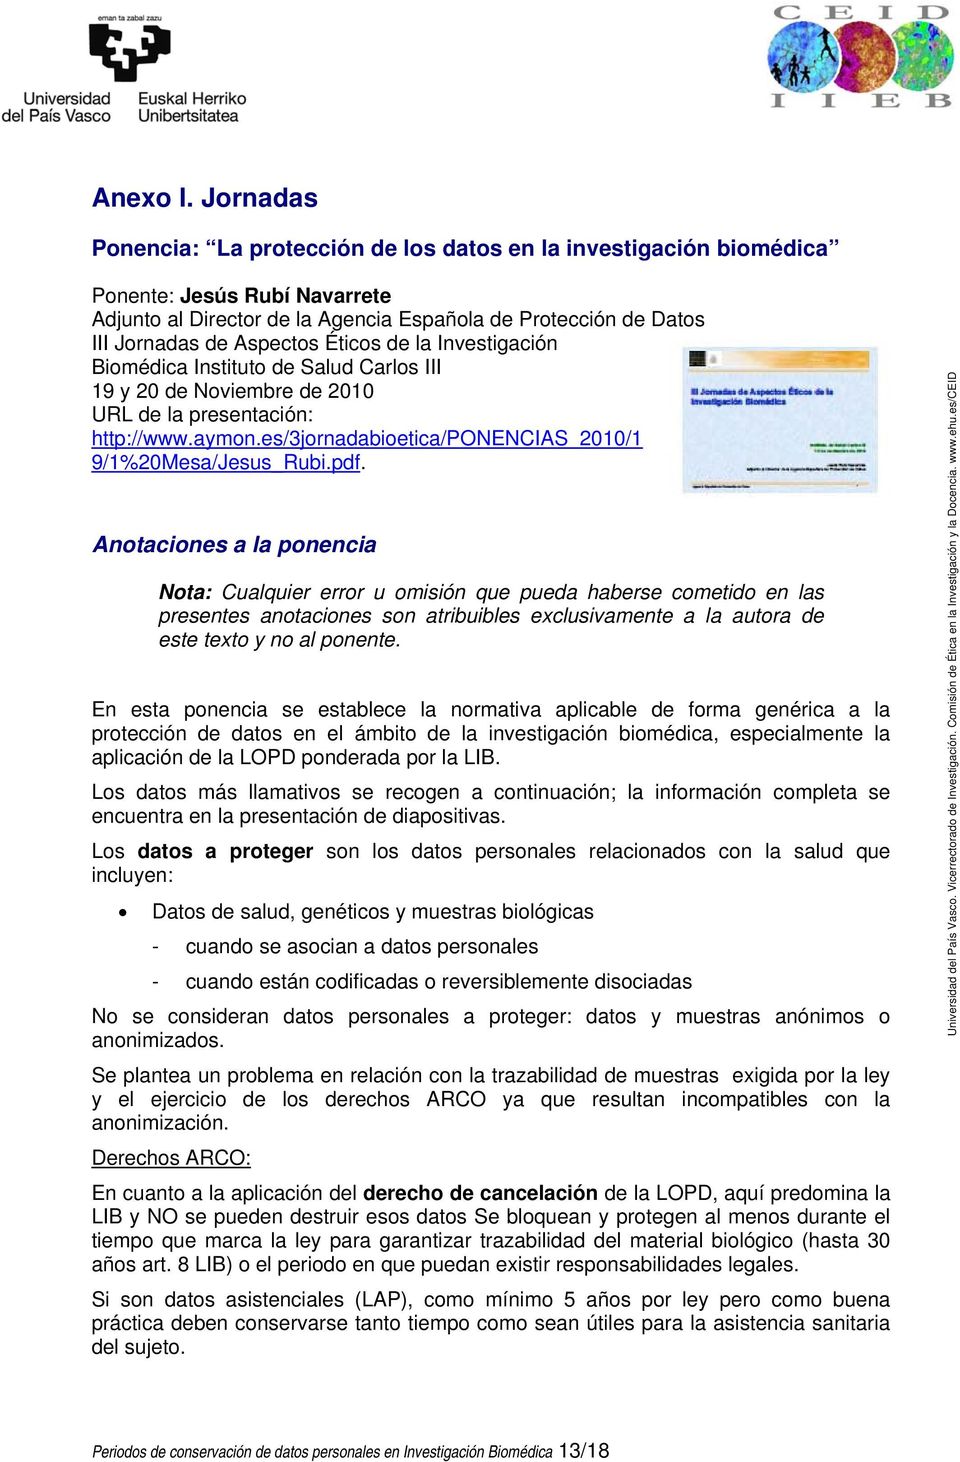 Éticos de la Investigación Biomédica Instituto de Salud Carlos III 19 y 20 de Noviembre de 2010 URL de la presentación: http://www.aymon.es/3jornadabioetica/ponencias_2010/1 9/1%20Mesa/Jesus_Rubi.pdf.